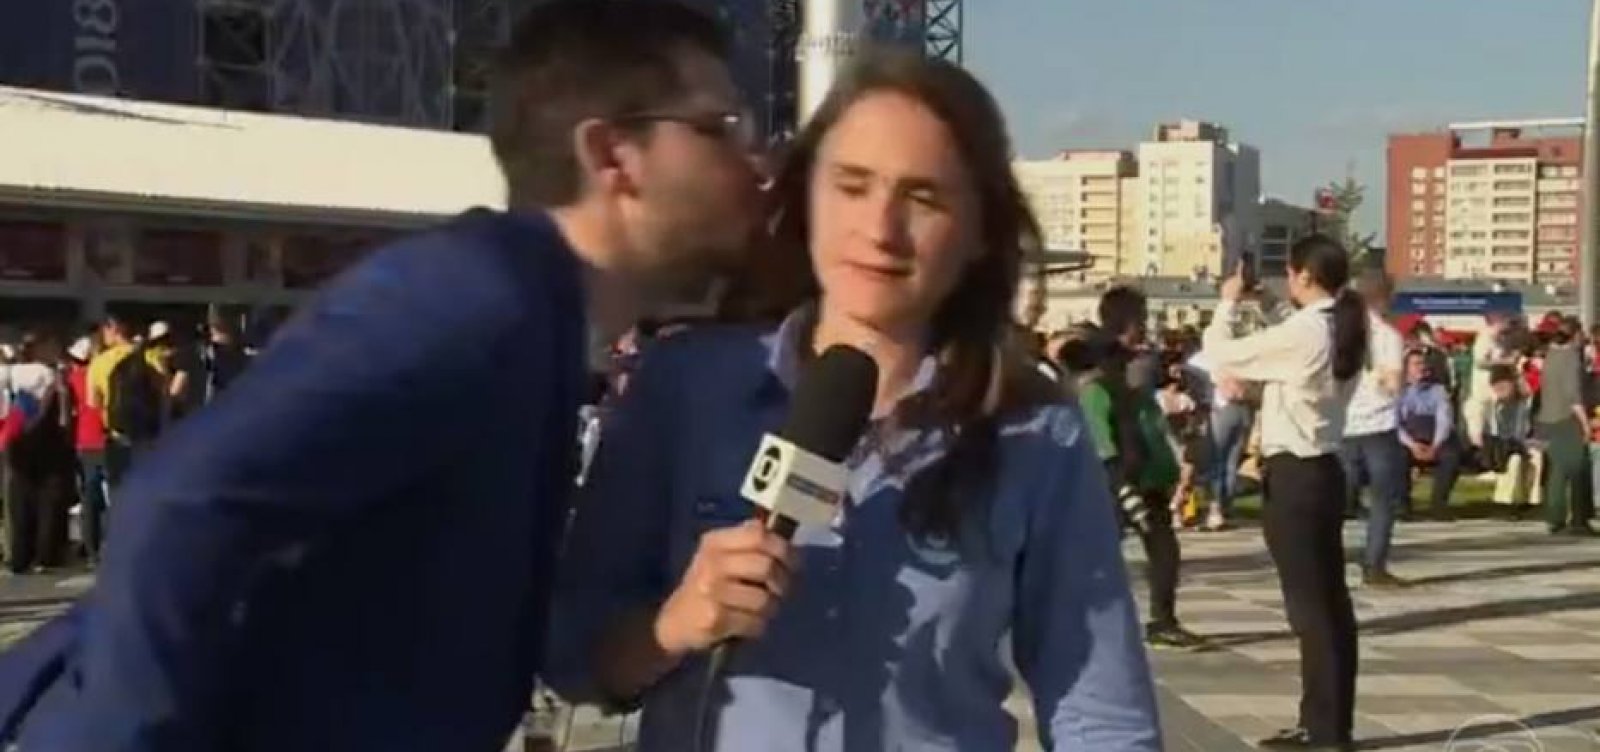 Veja; Repórter da Globo é assediada ao vivo na Rússia: 'Me sinto indefesa'